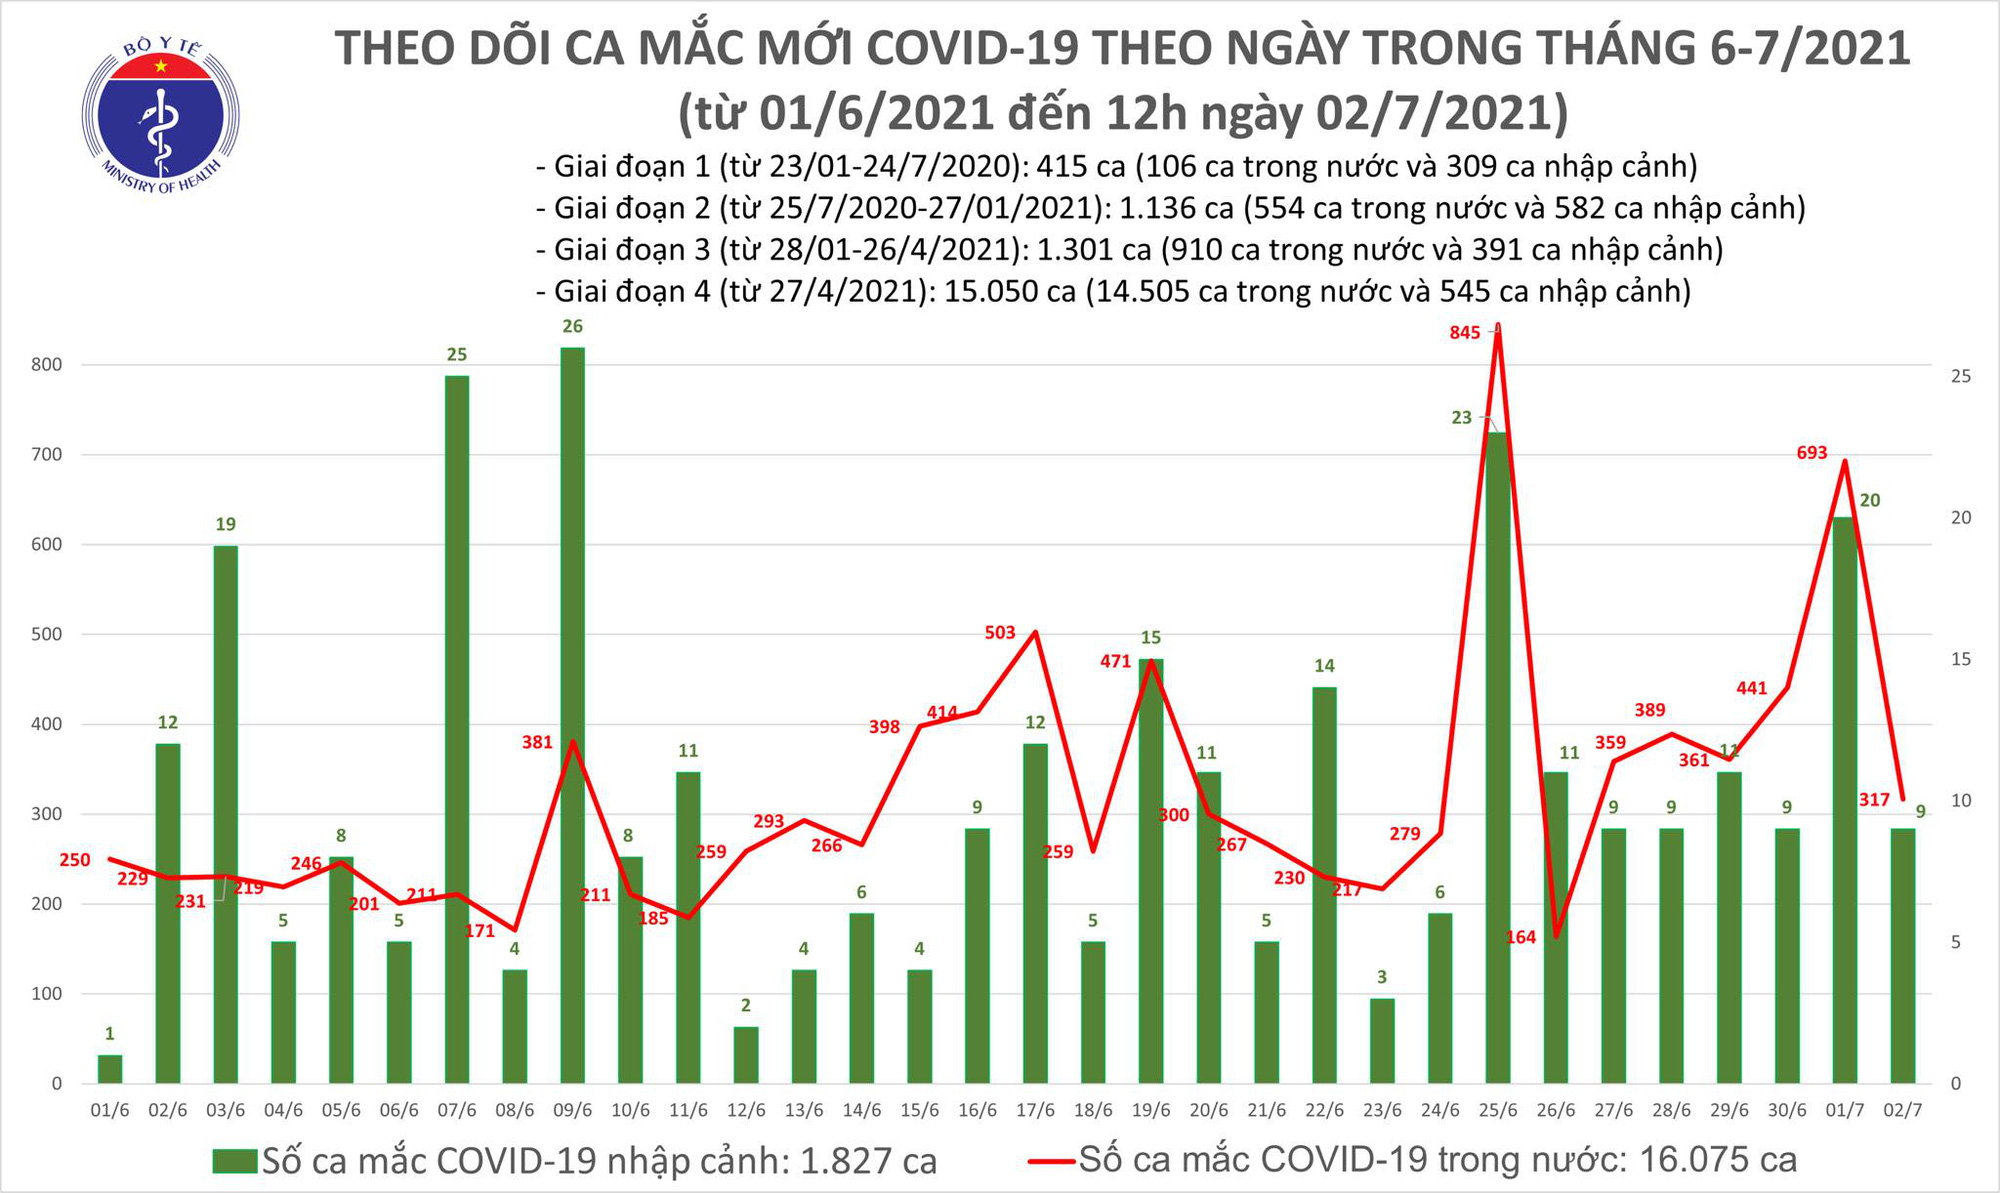 Trưa 2/7, thêm 175 ca mắc COVID-19, riêng TP. Hồ Chí Minh đã có 151 ca - Ảnh 1.